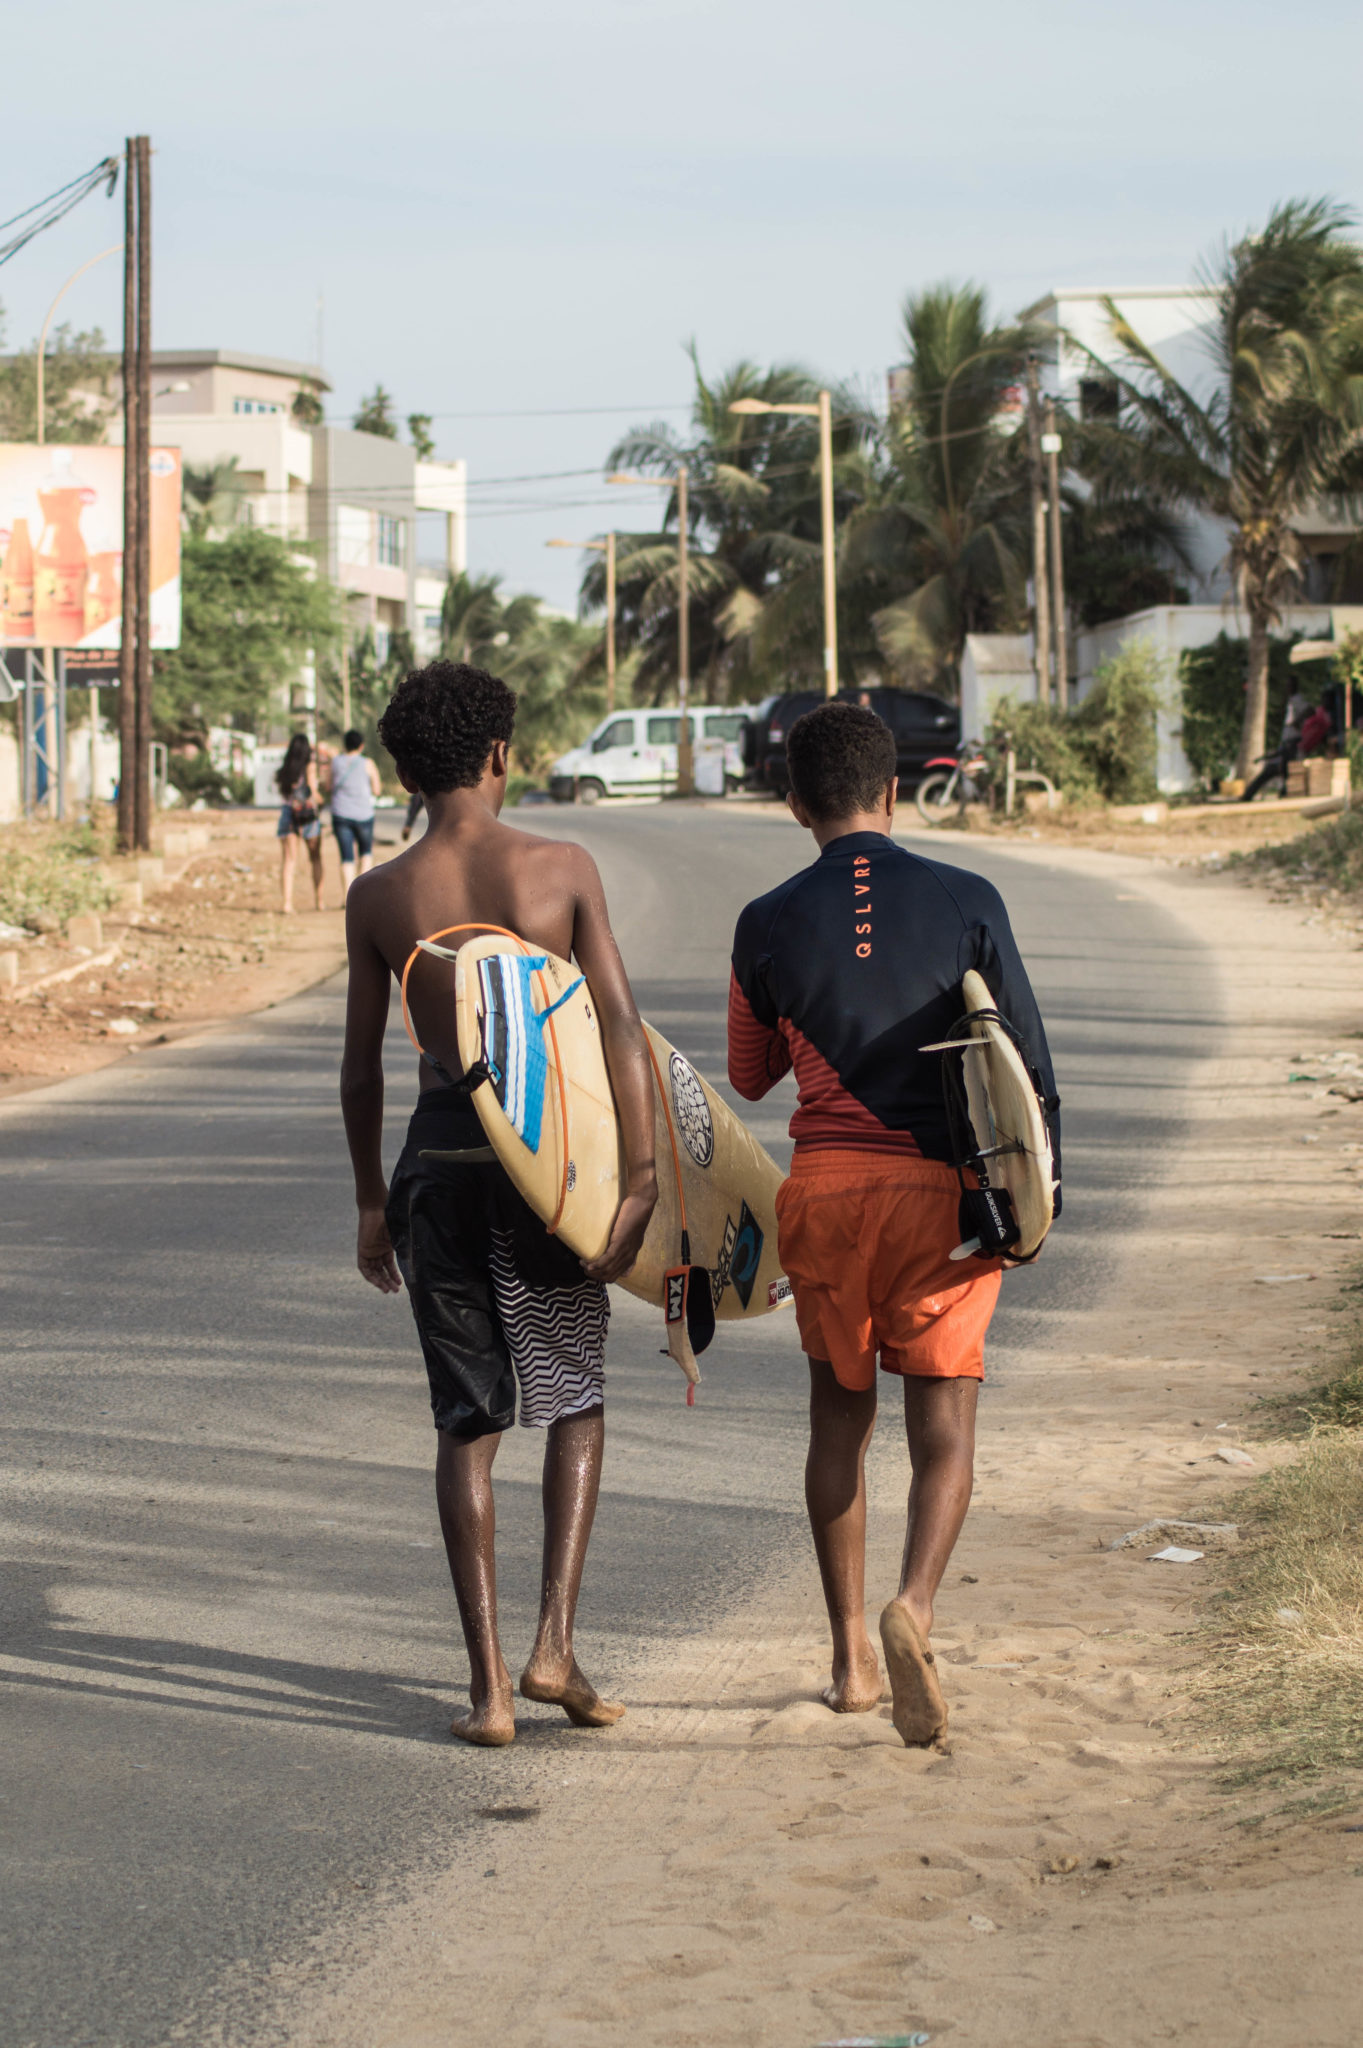 Surf Senegal: In den Straßen von Les Almadies sieht man oft junge Surfer, die mit ihren Surfbrettern nach Hause spazieren.